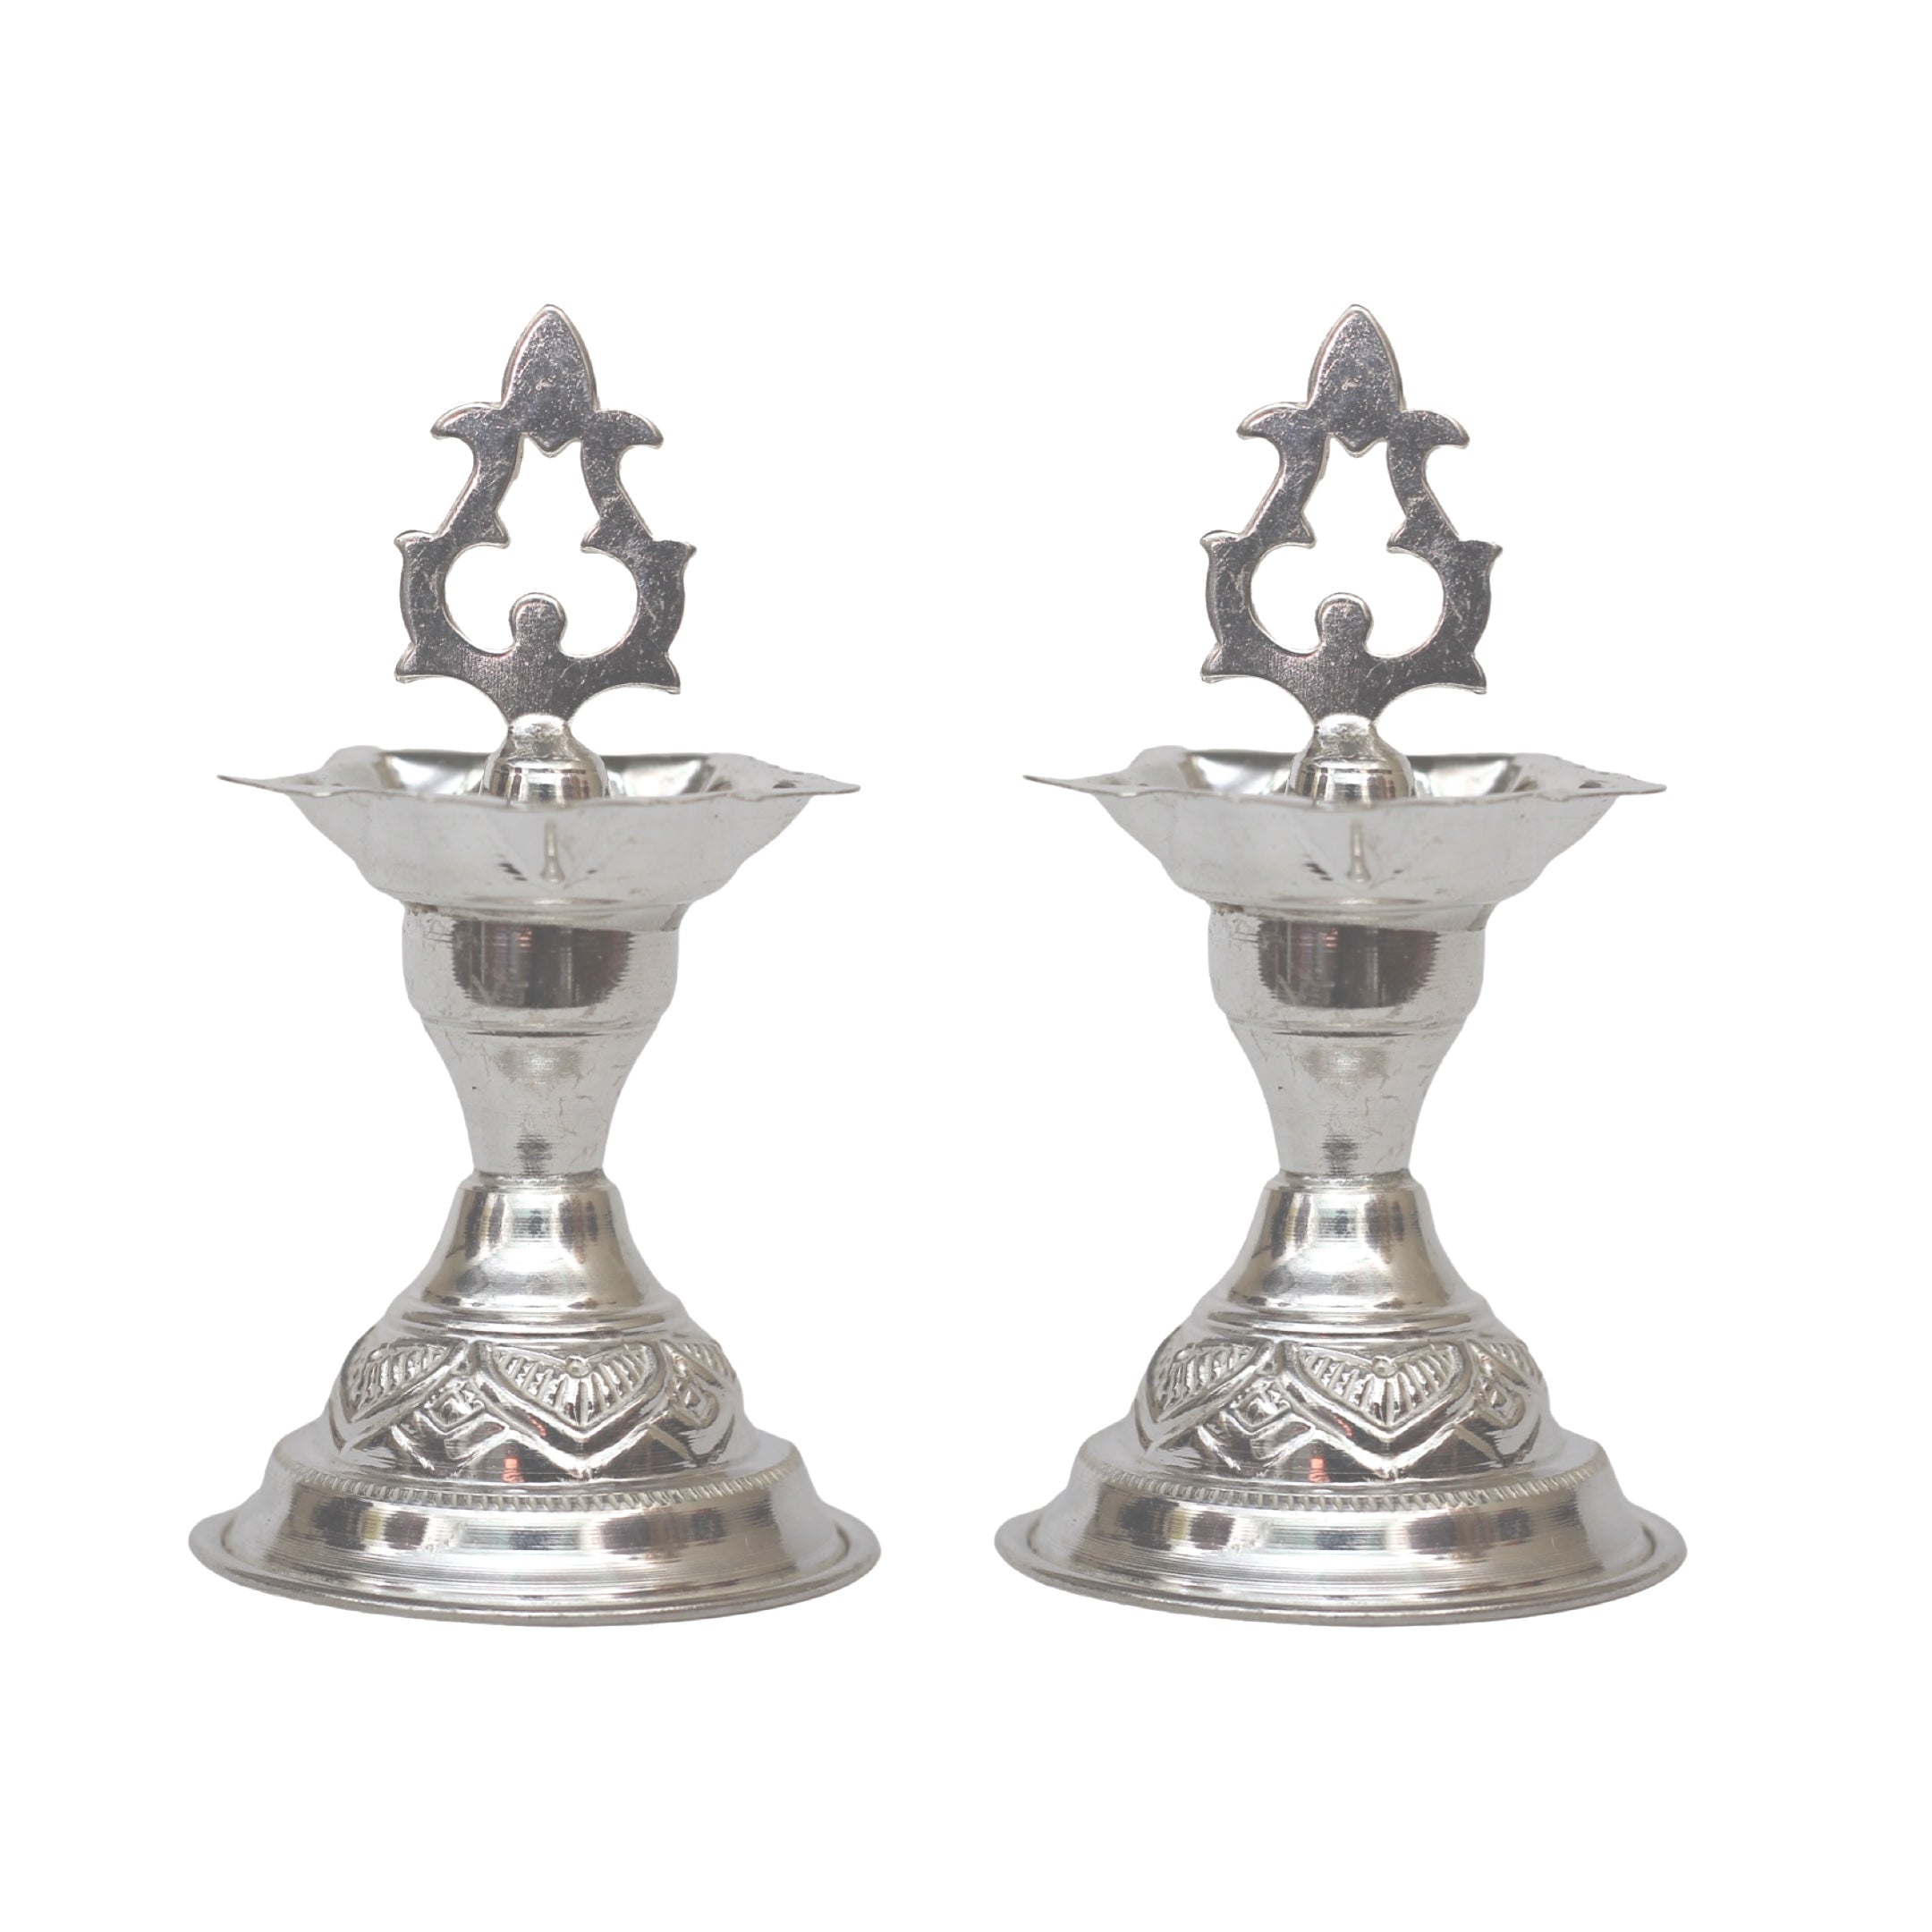 Buy Diya Lamp Oil Stand (Small Size) / Deepam Kundulu (Small Size